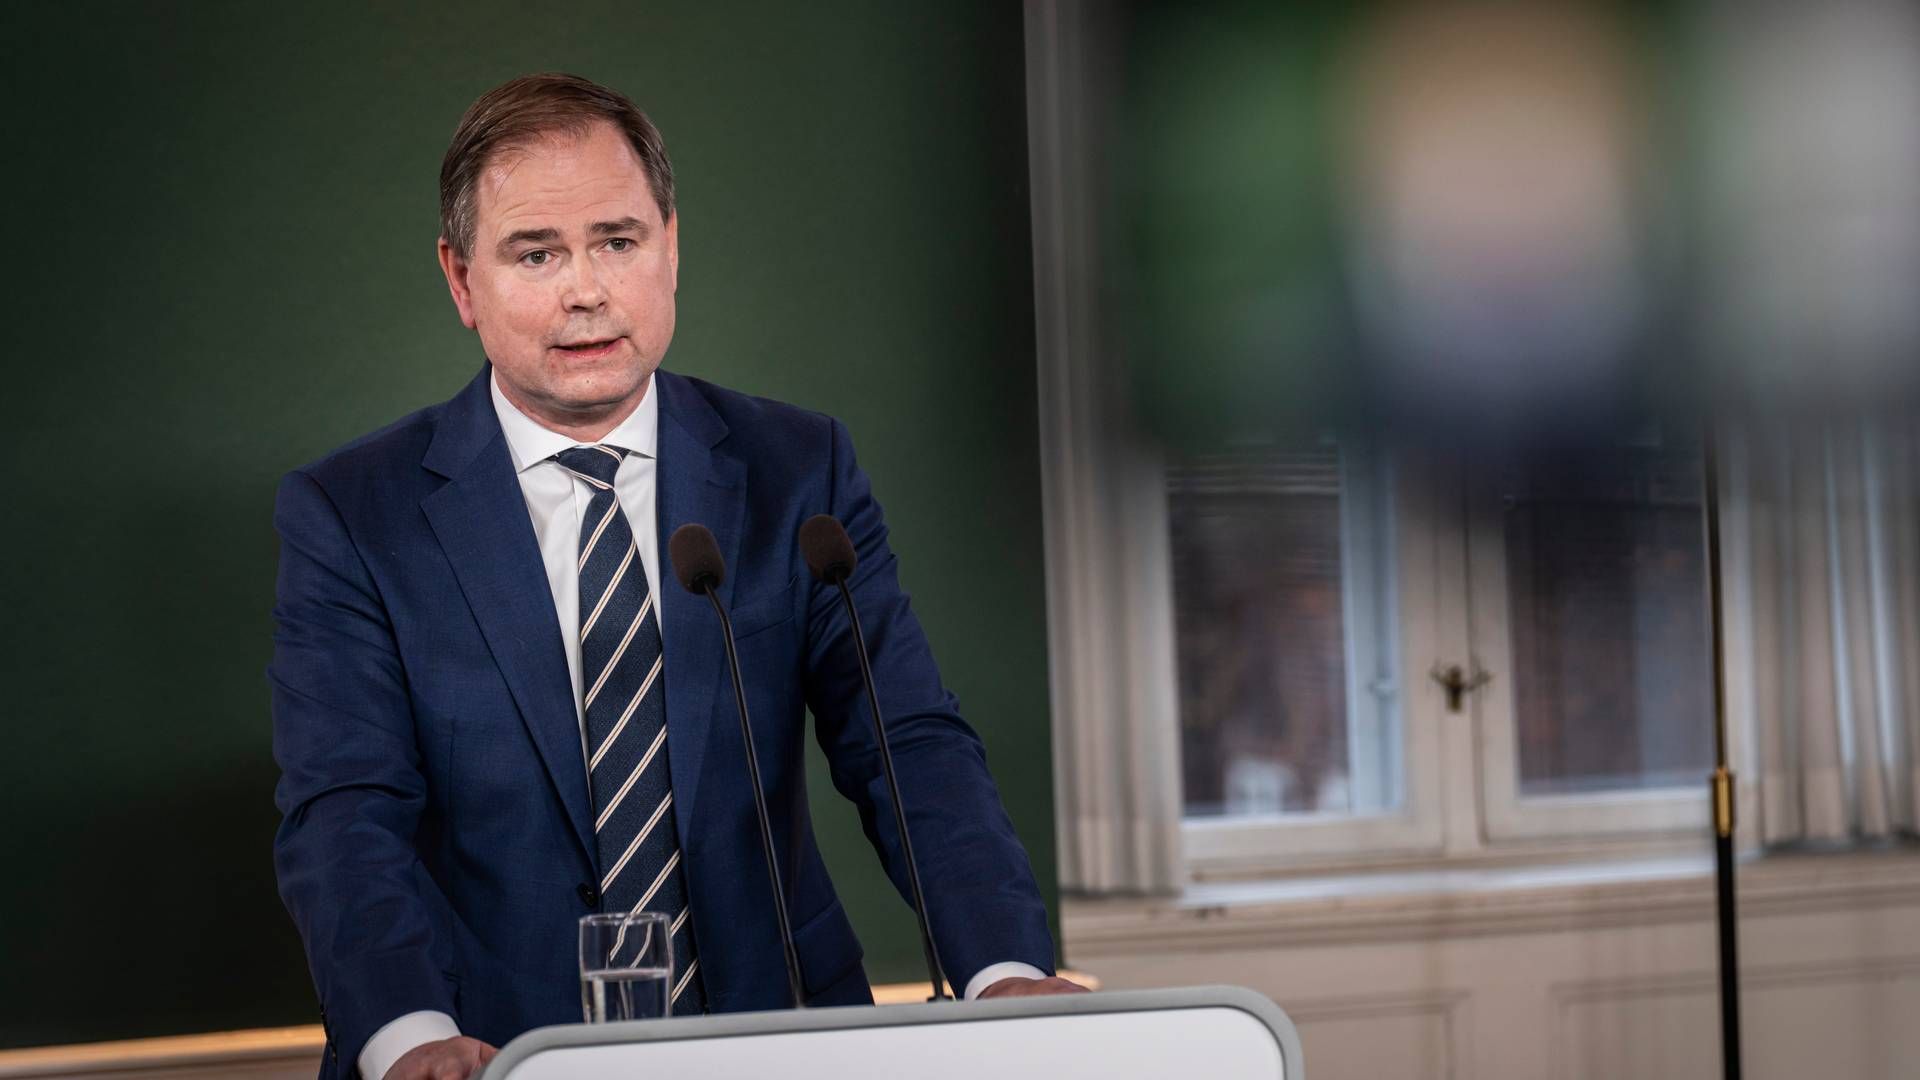 Finansministeren Nicolai Wammen (S) fremlagde tirsdag regeringens 2030-plan i Finansministeriet. | Foto: Emil Nicolai Helms